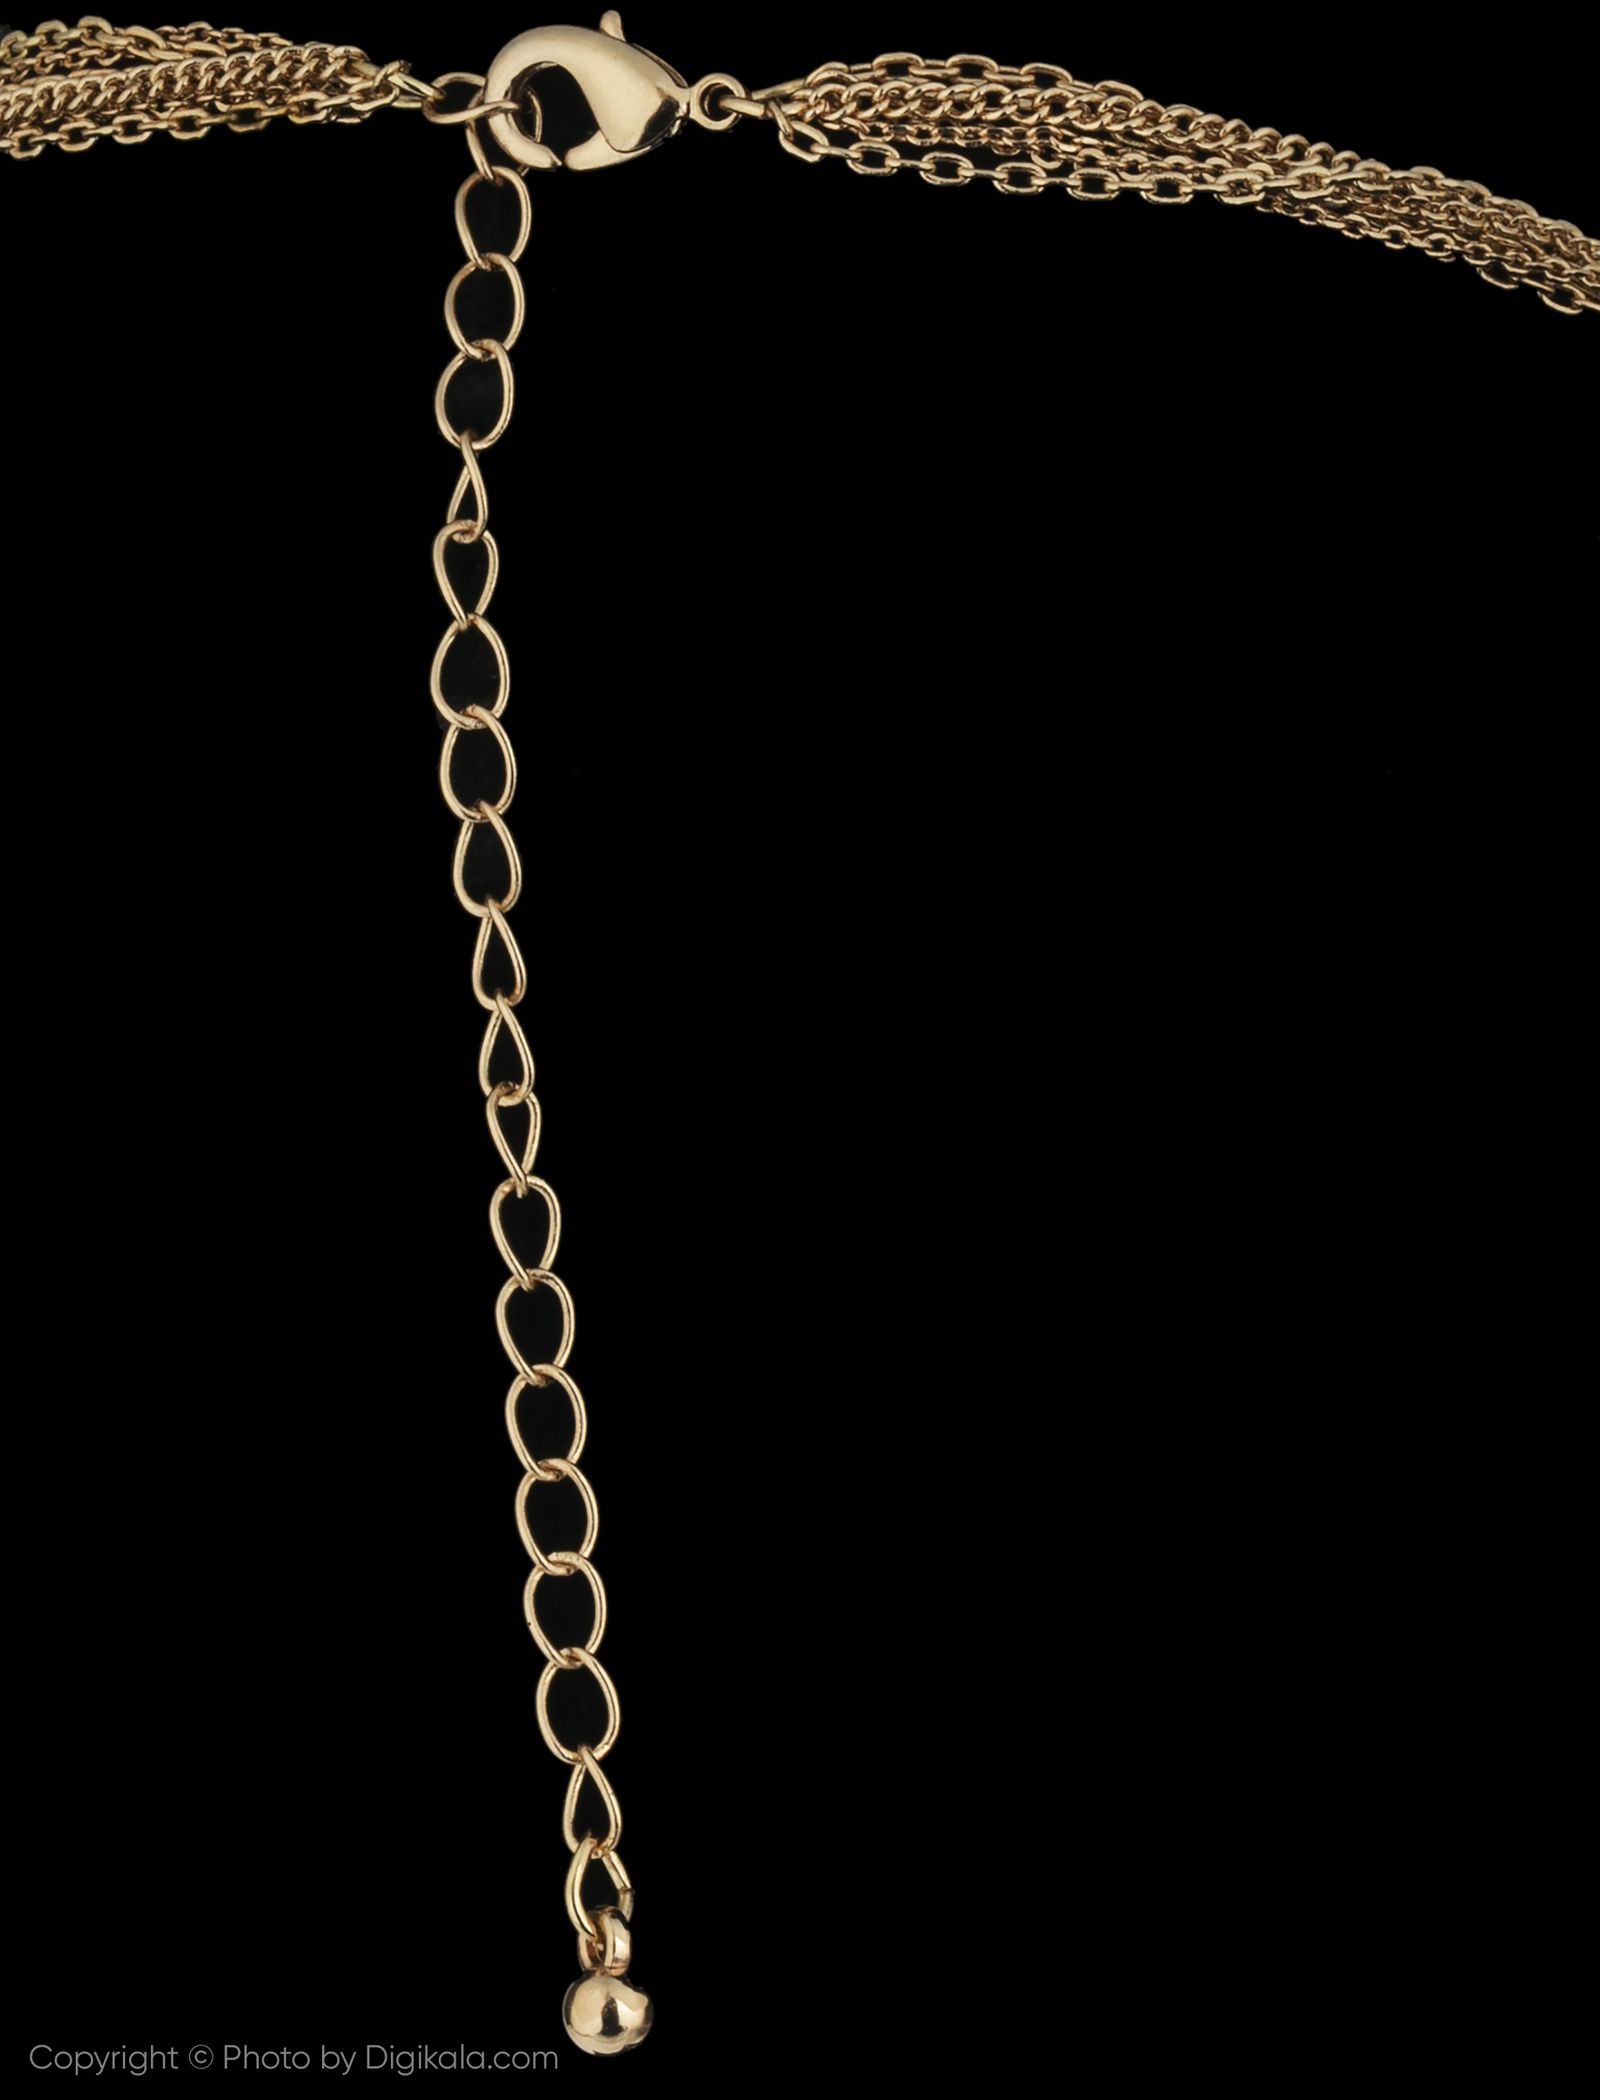 گردنبند زنانه اسپرینگ فیلد مدل 8453748-BROWNS - طلایی - 4